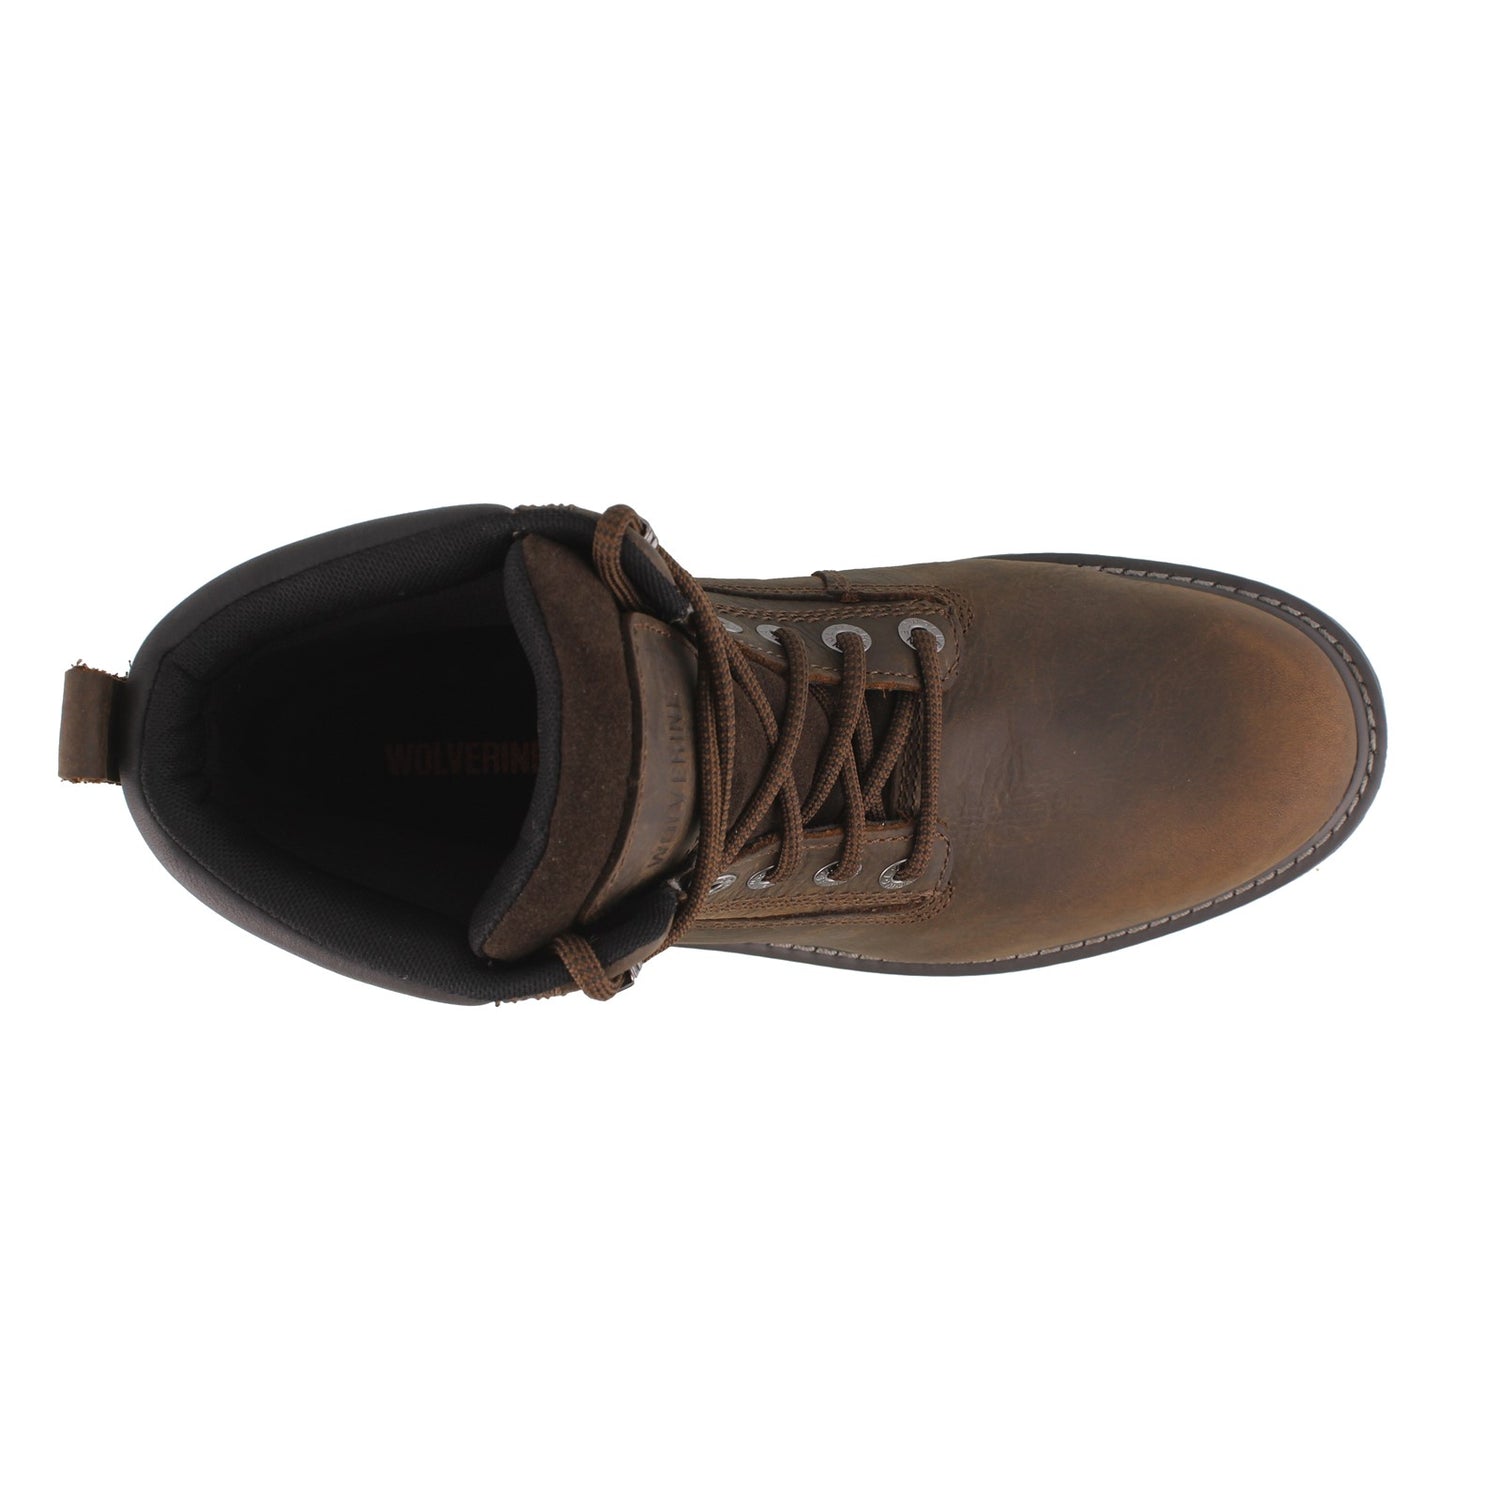 Peltz Shoes  Men's Wolverine Boots Floorhand 6 inch Waterproof Work Boots DARK BROWN W10643